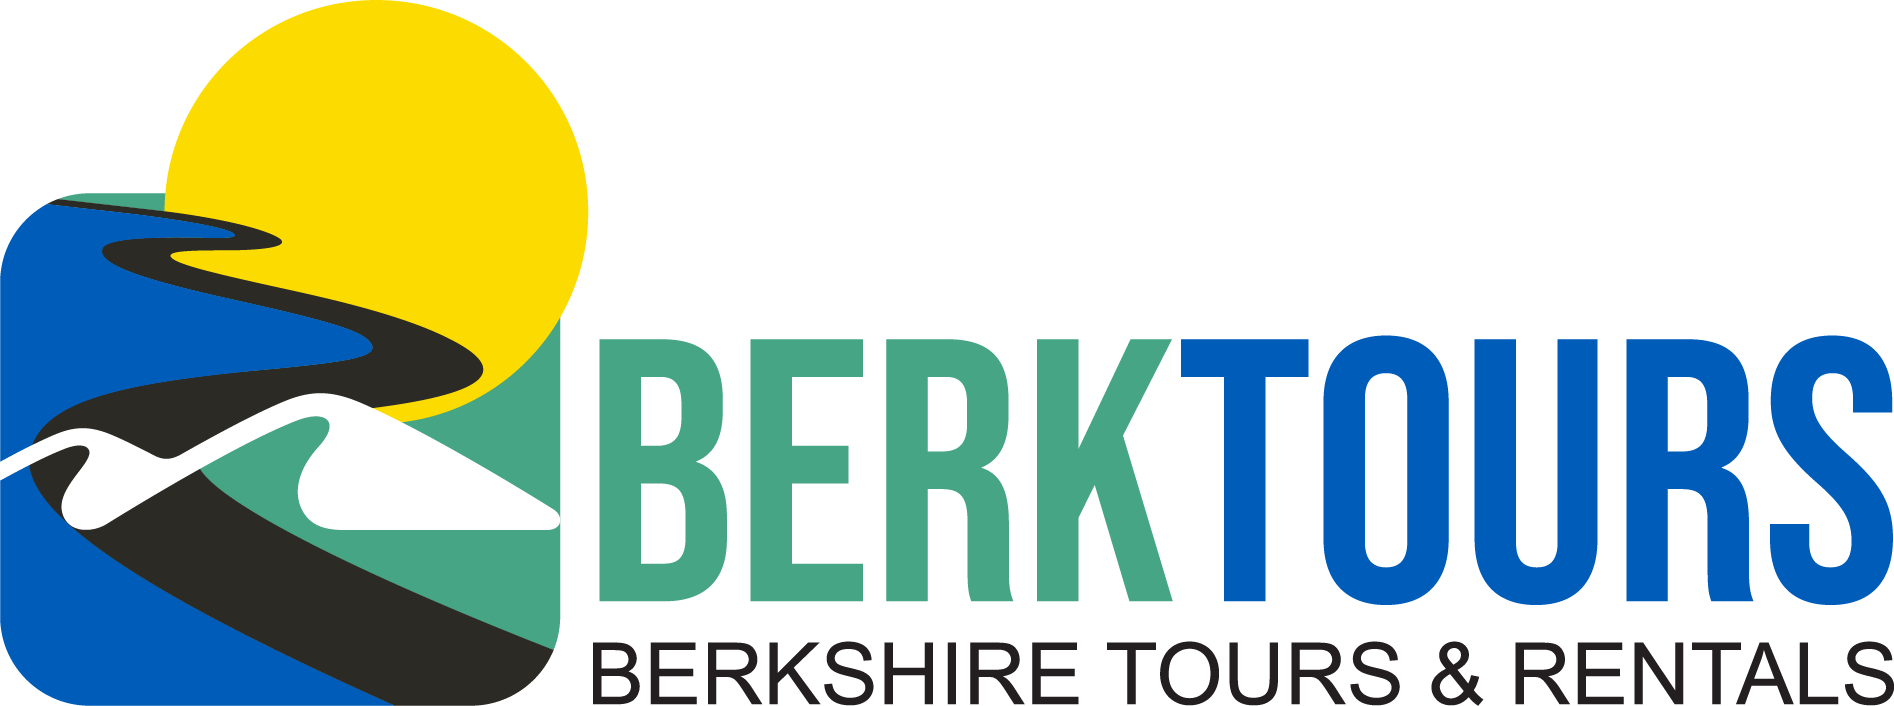 BERKTOURS Berkshire Tours and Rentals